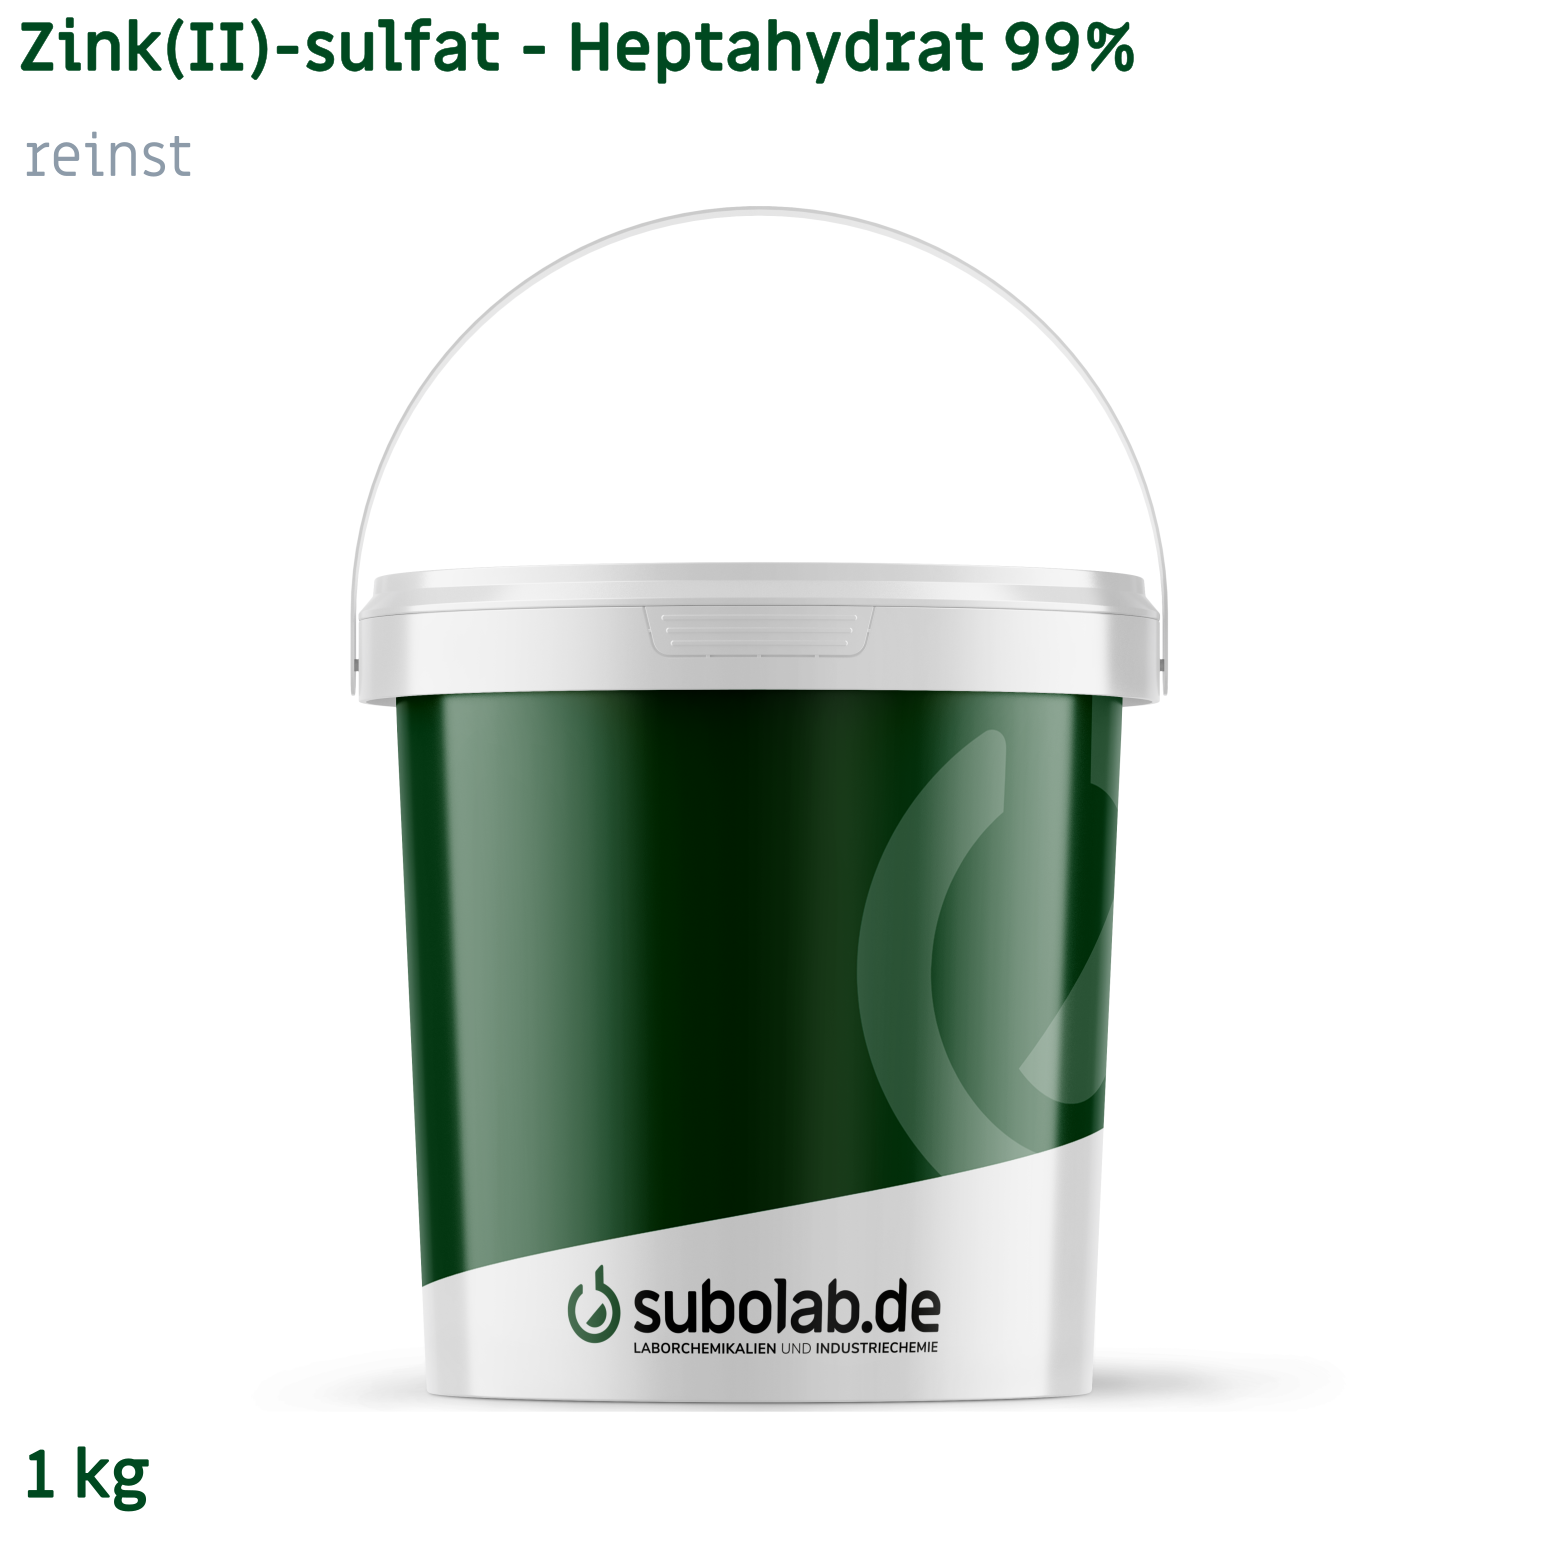 Bild von Zink(II)-sulfat - Heptahydrat 99% reinst (1 kg)